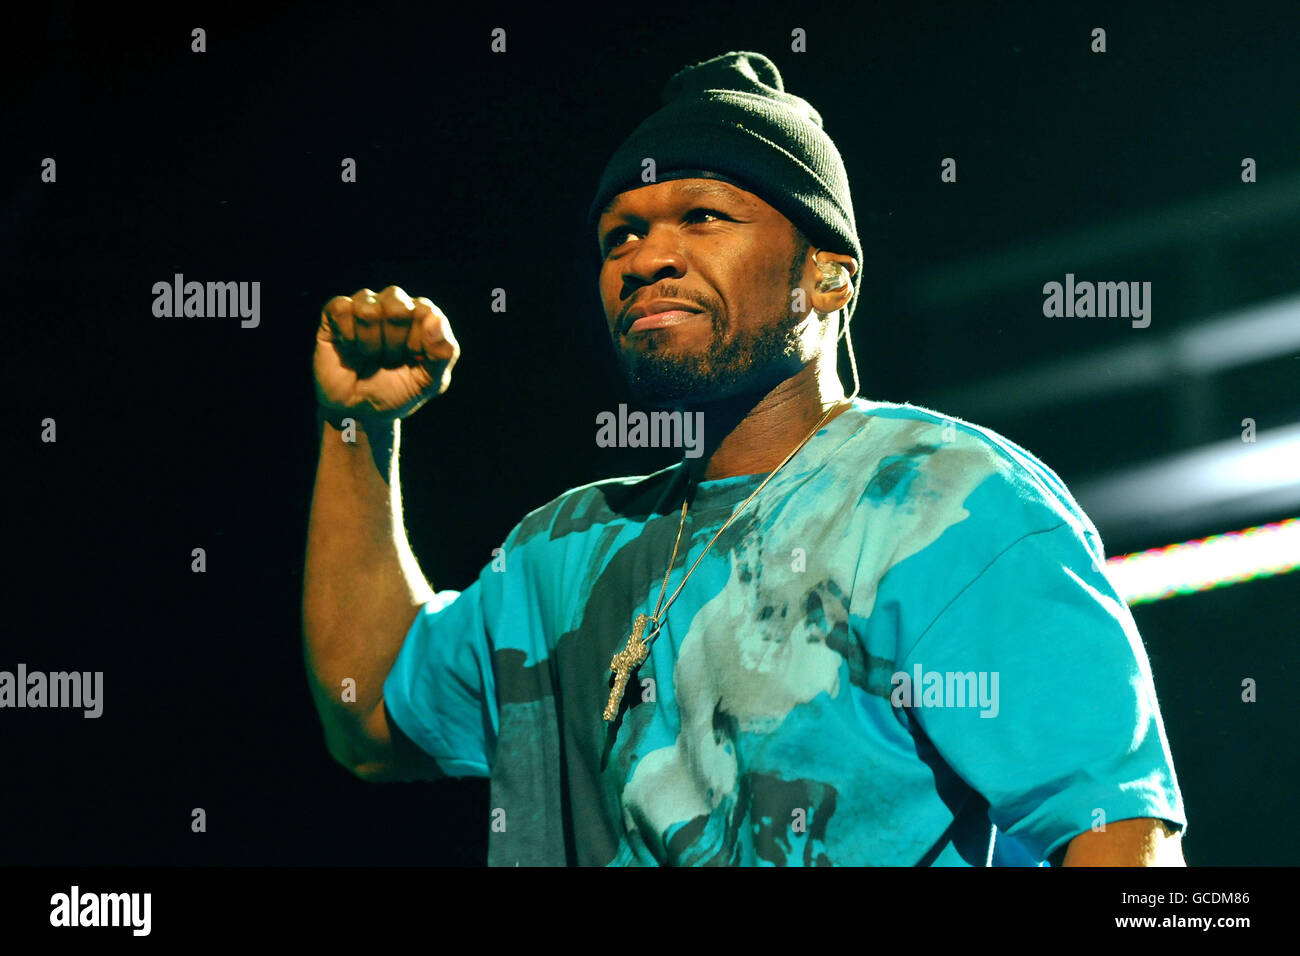 PER , SOLO IN RELAZIONE AL TOUR. 50 Cent si esibisce dal vivo sul palco presso la NEC LG Arena di Birmingham, Inghilterra. Foto Stock